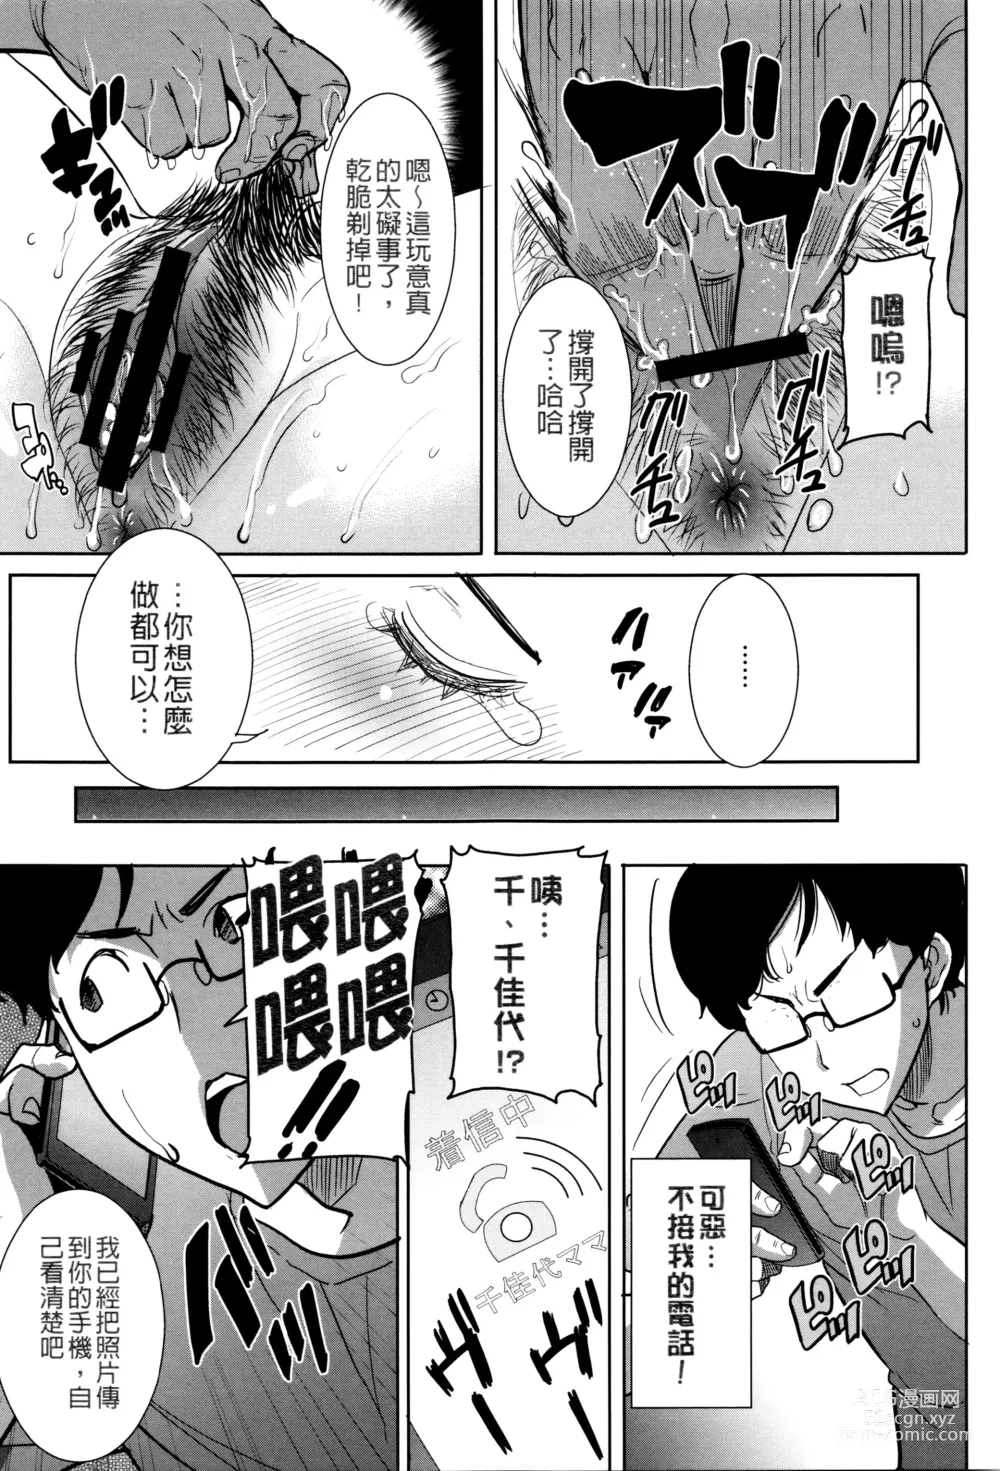 Page 24 of manga Kawaii Namaiki Tsuma Chikayo...to Motokare 1+2